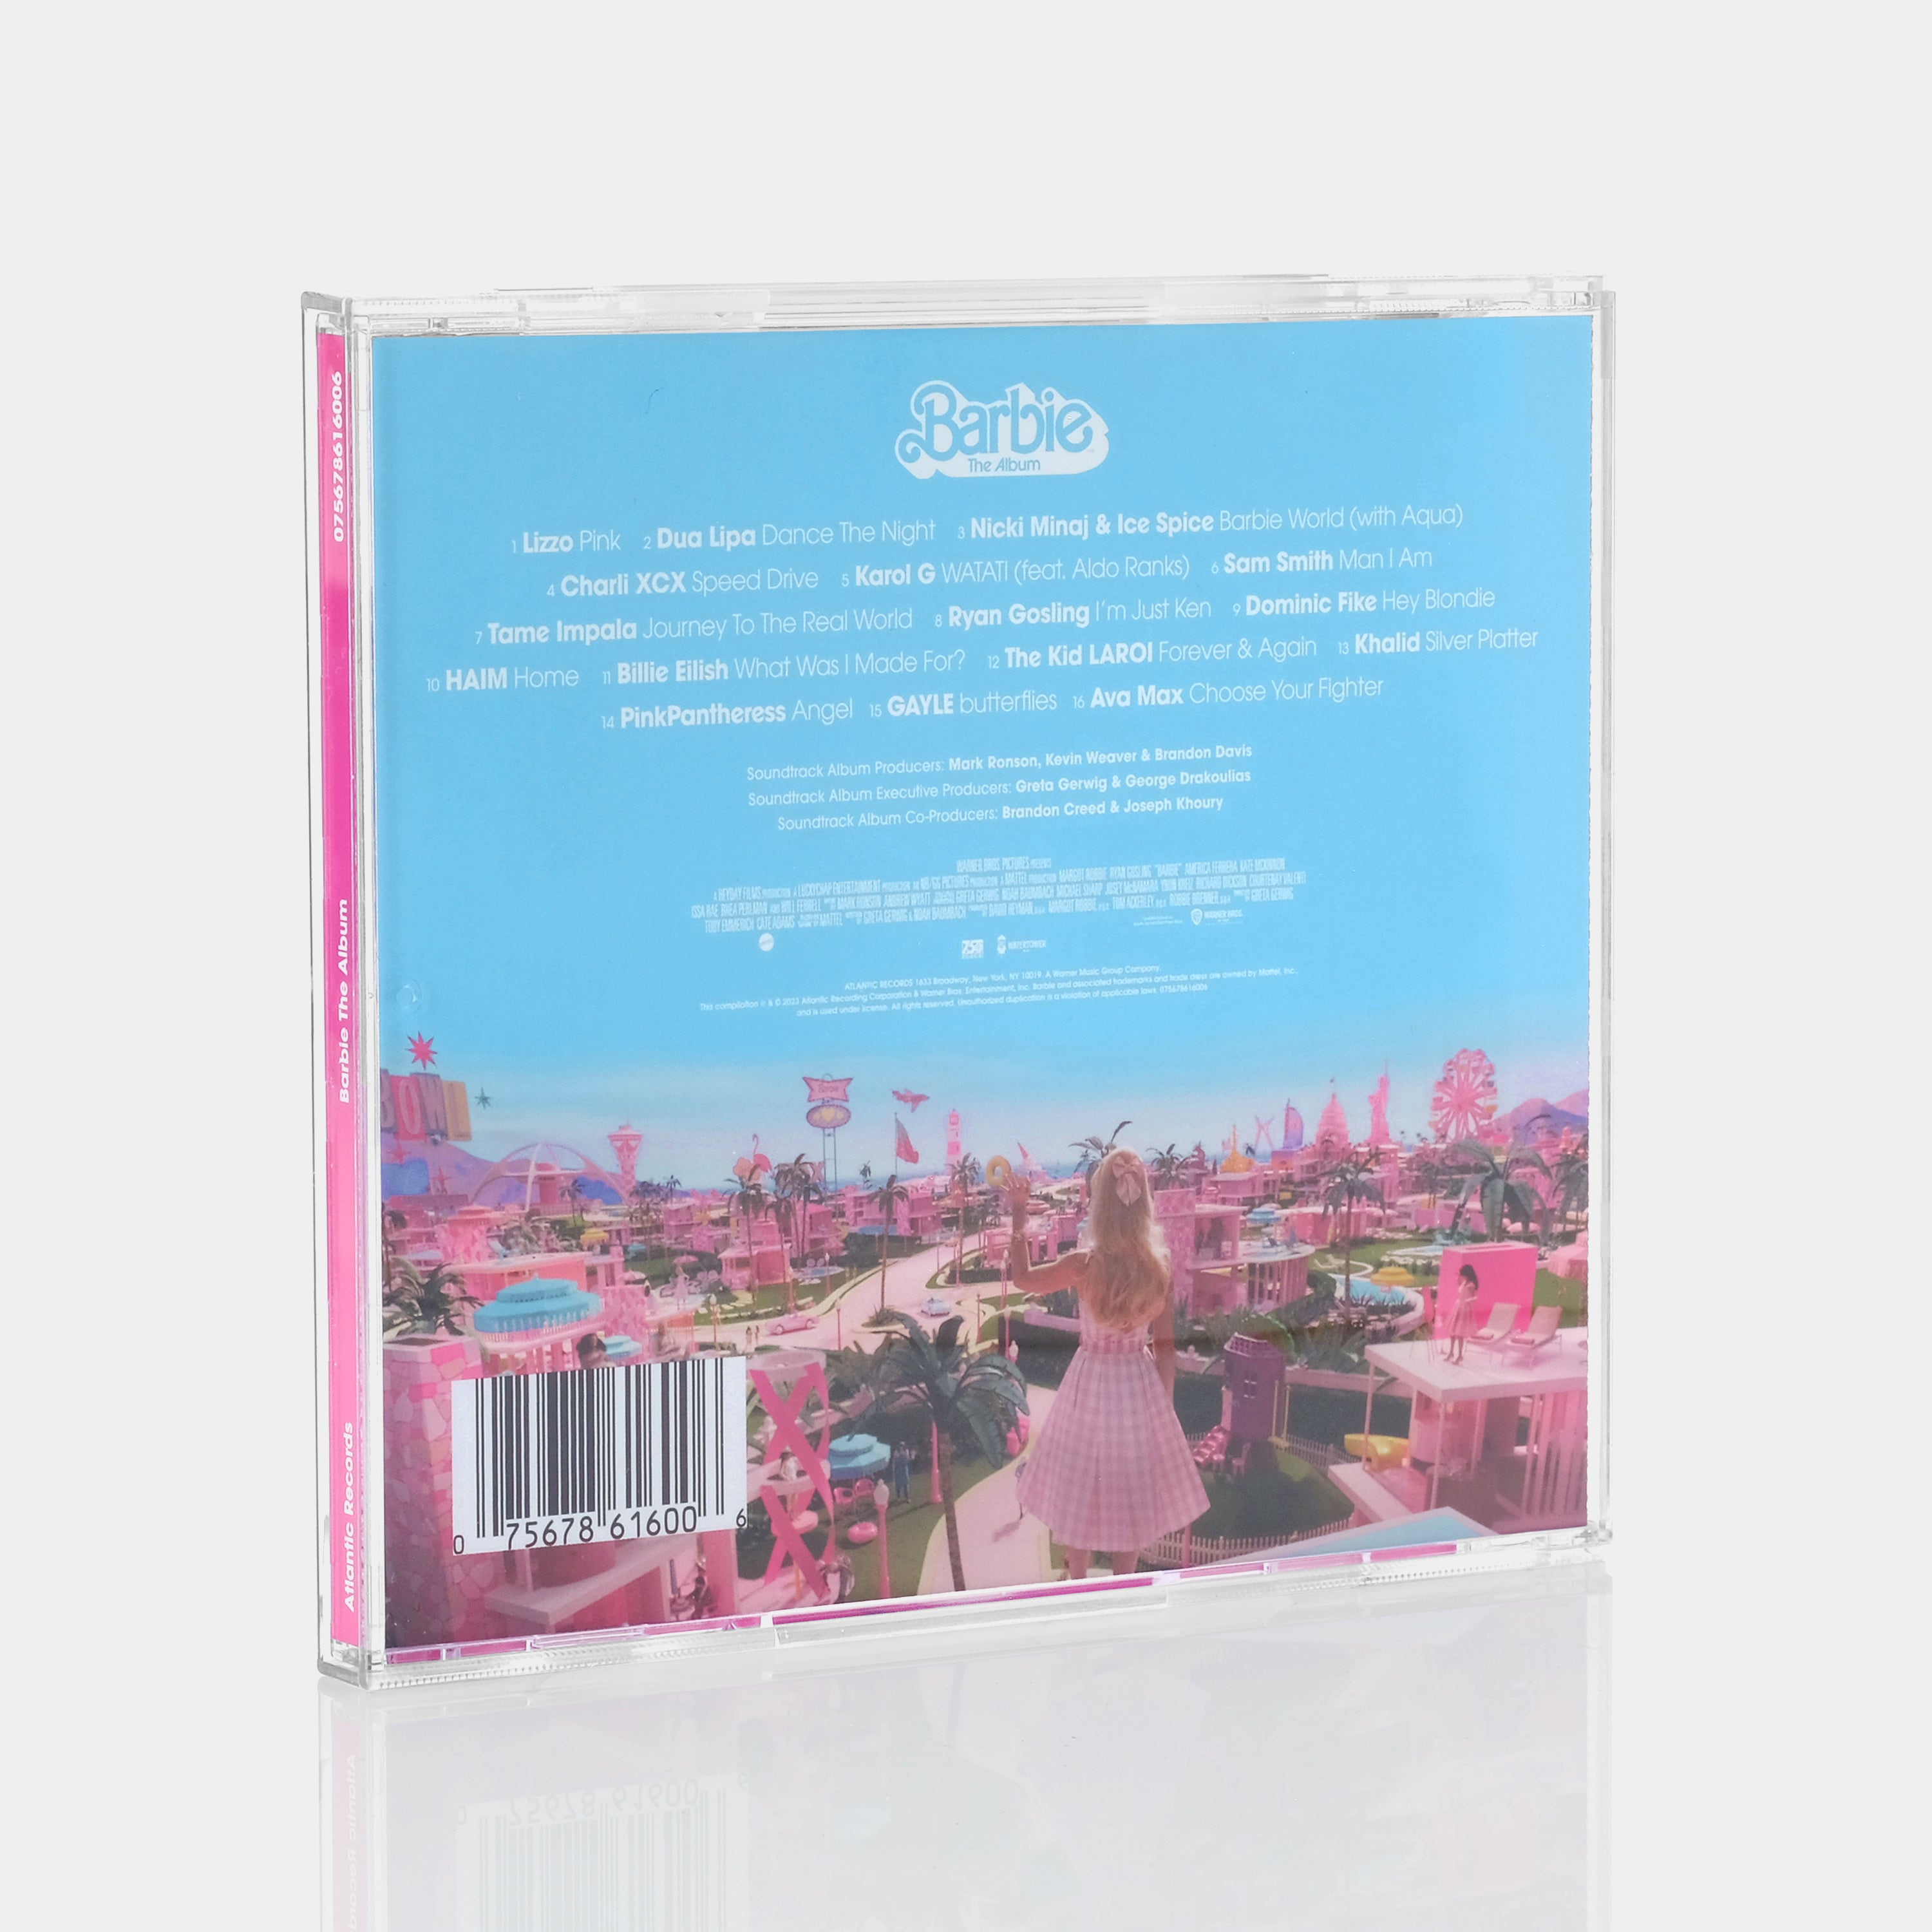 Barbie: The Album CD